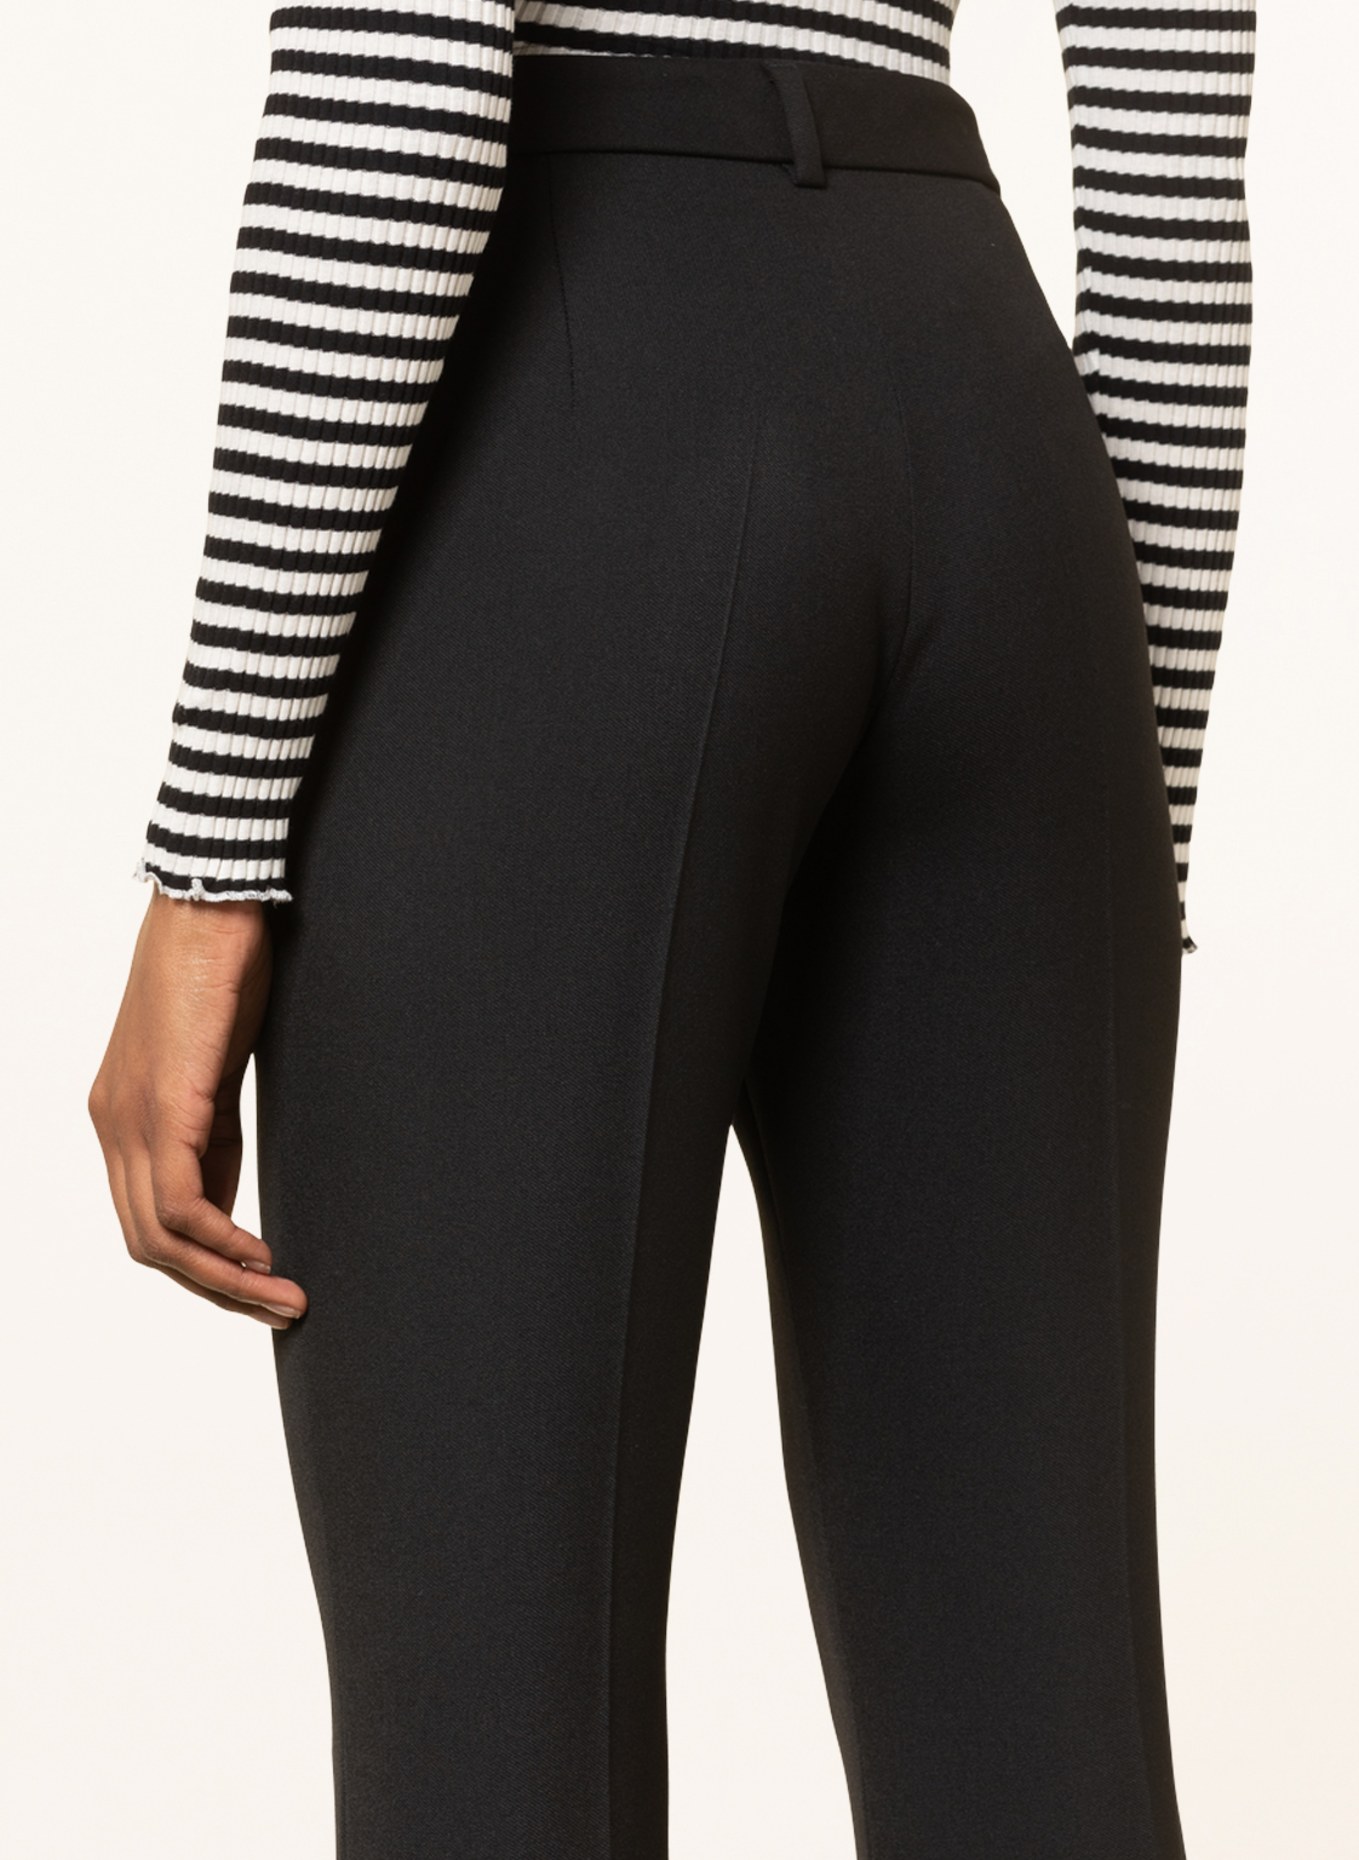 SEDUCTIVE Pants, Color: BLACK (Image 5)